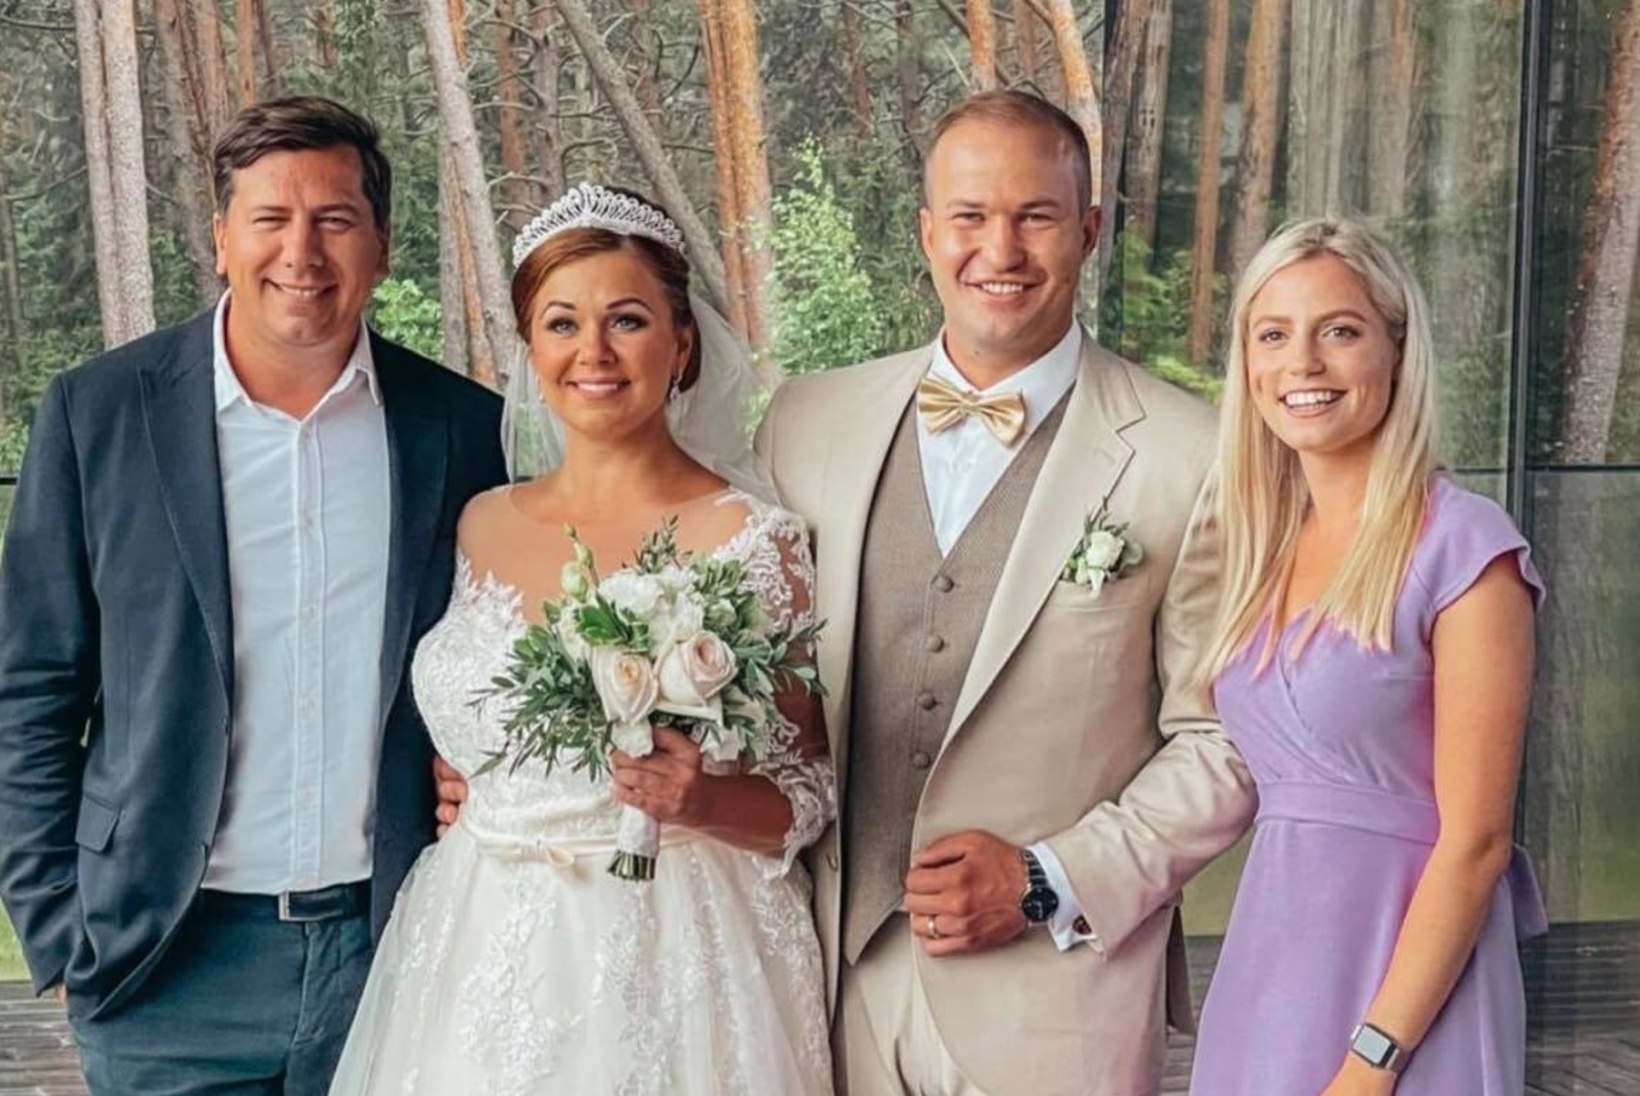 FOTO | Hõissa! Lauljatar Merlyn Uusküla abiellus: ilm on maagiline, tõeline raju reede!